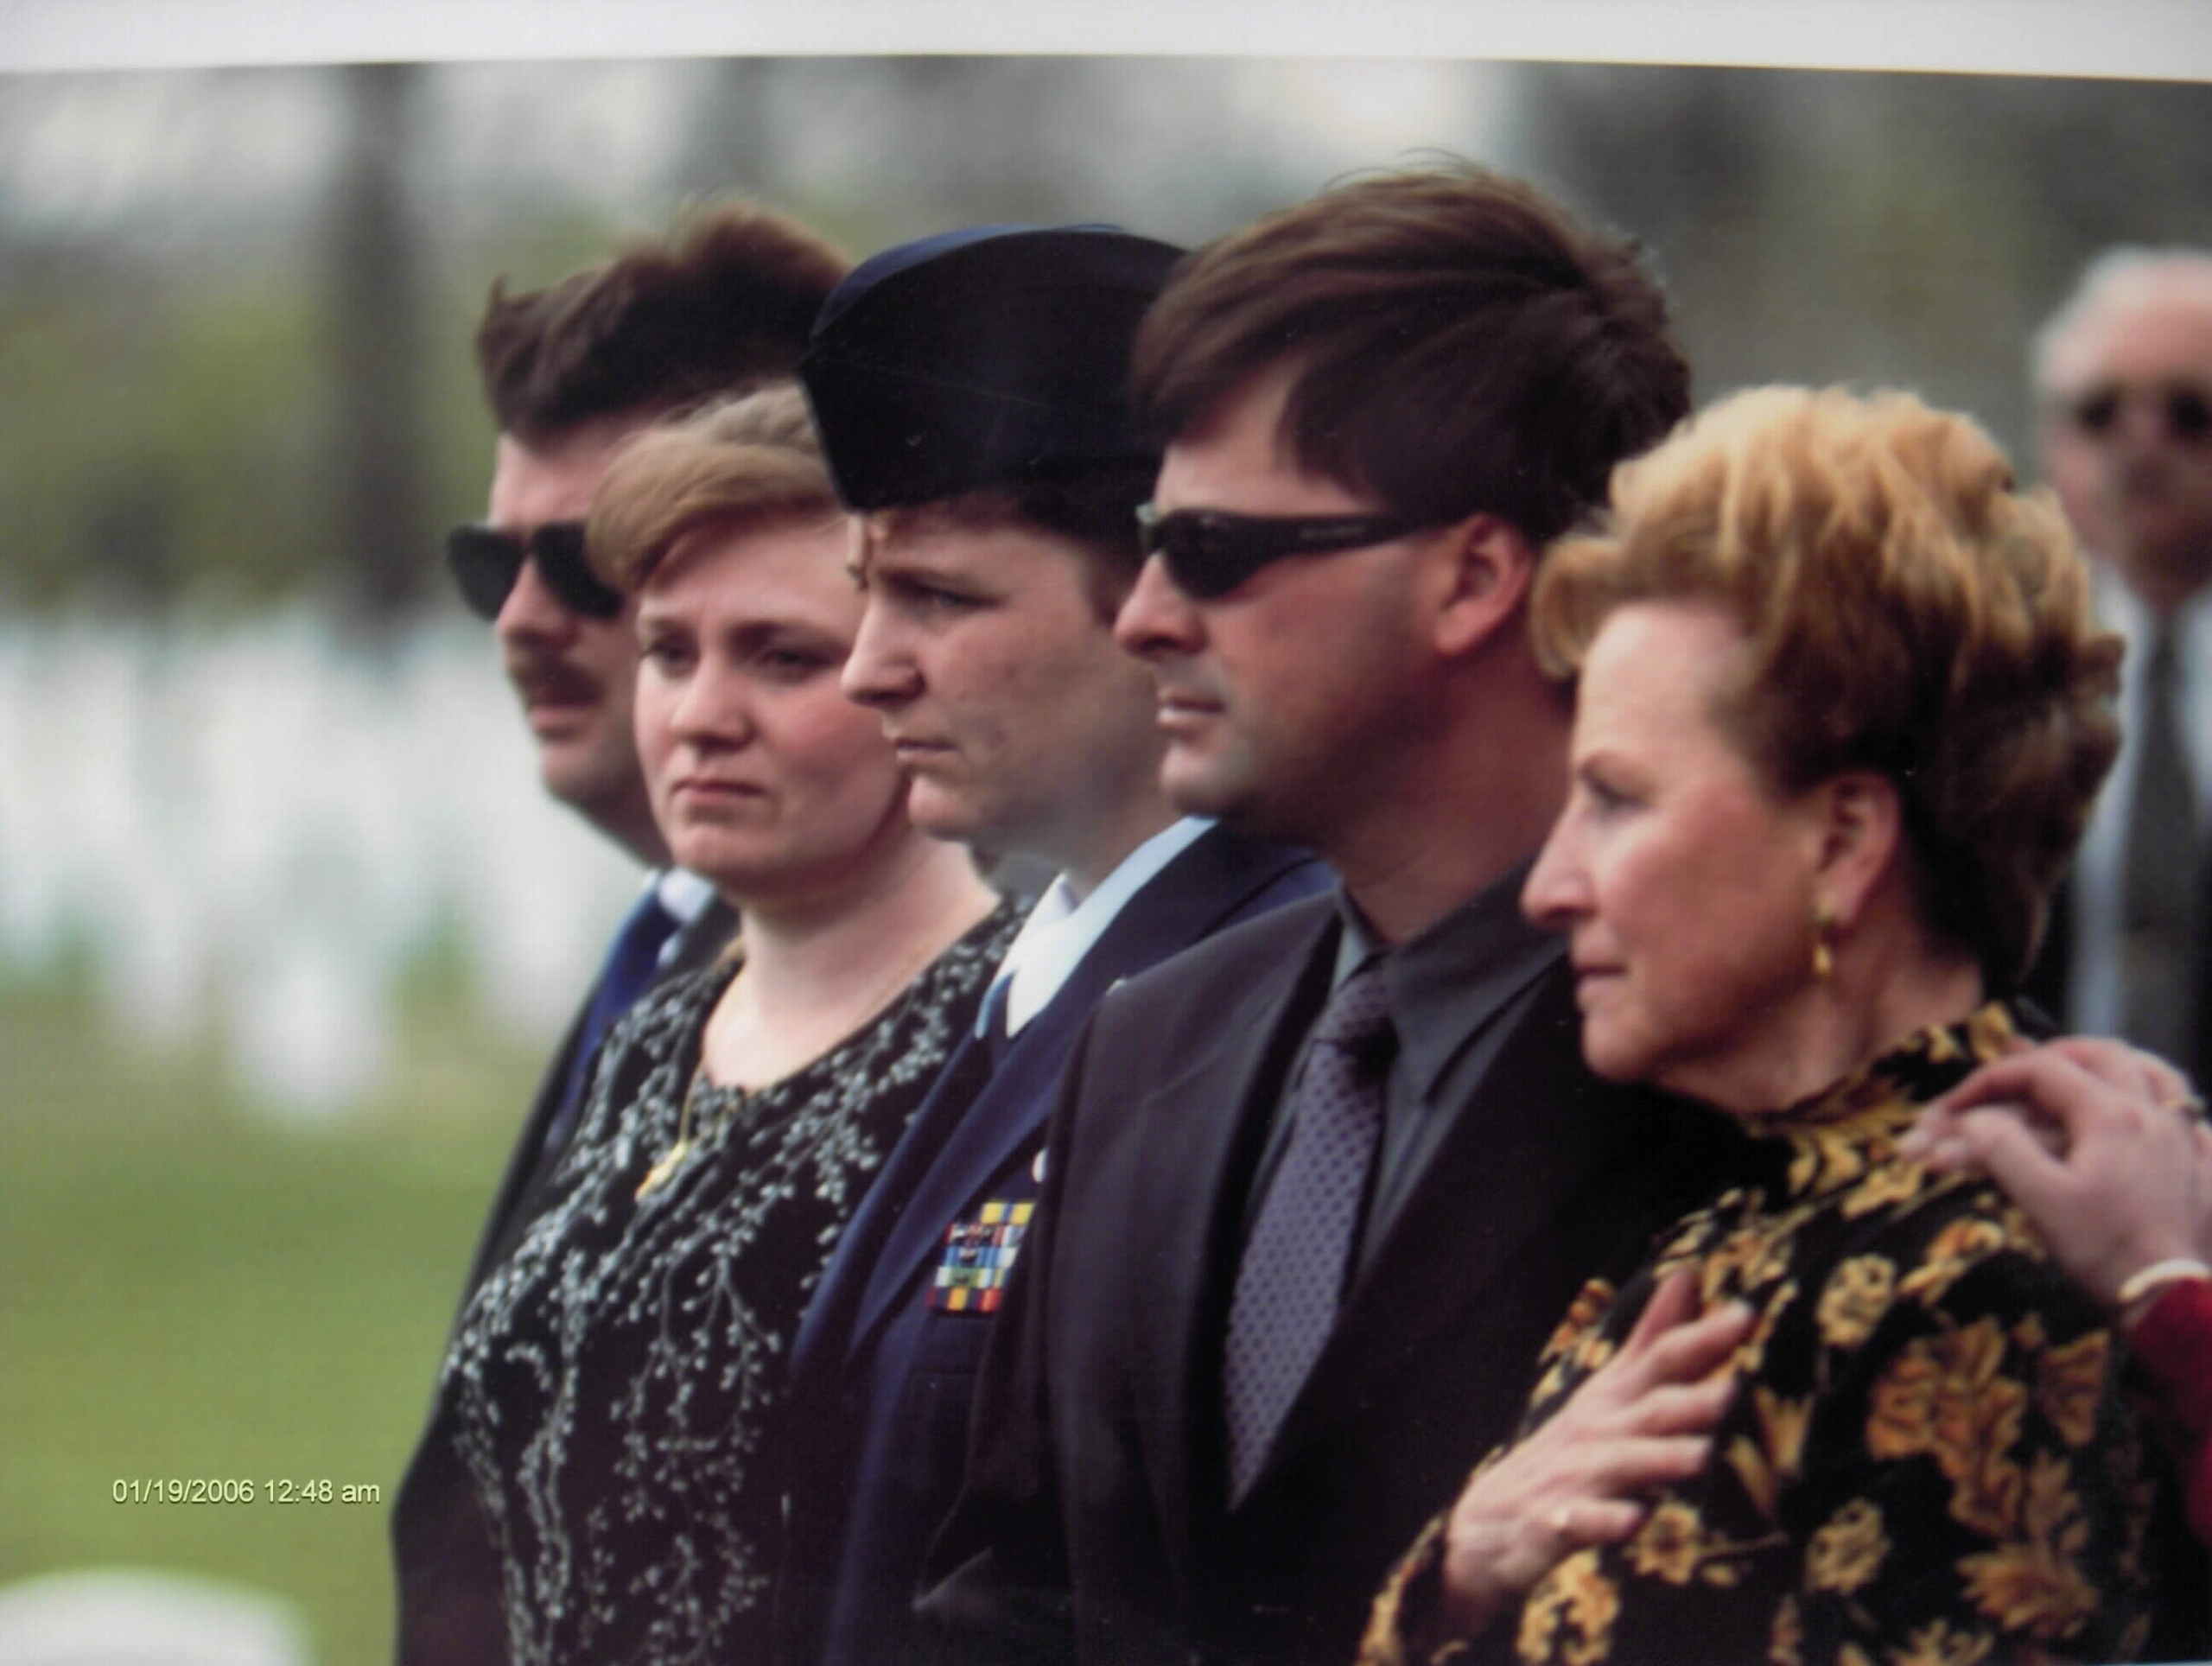 jdyamnicky-funeral-services-photo-01